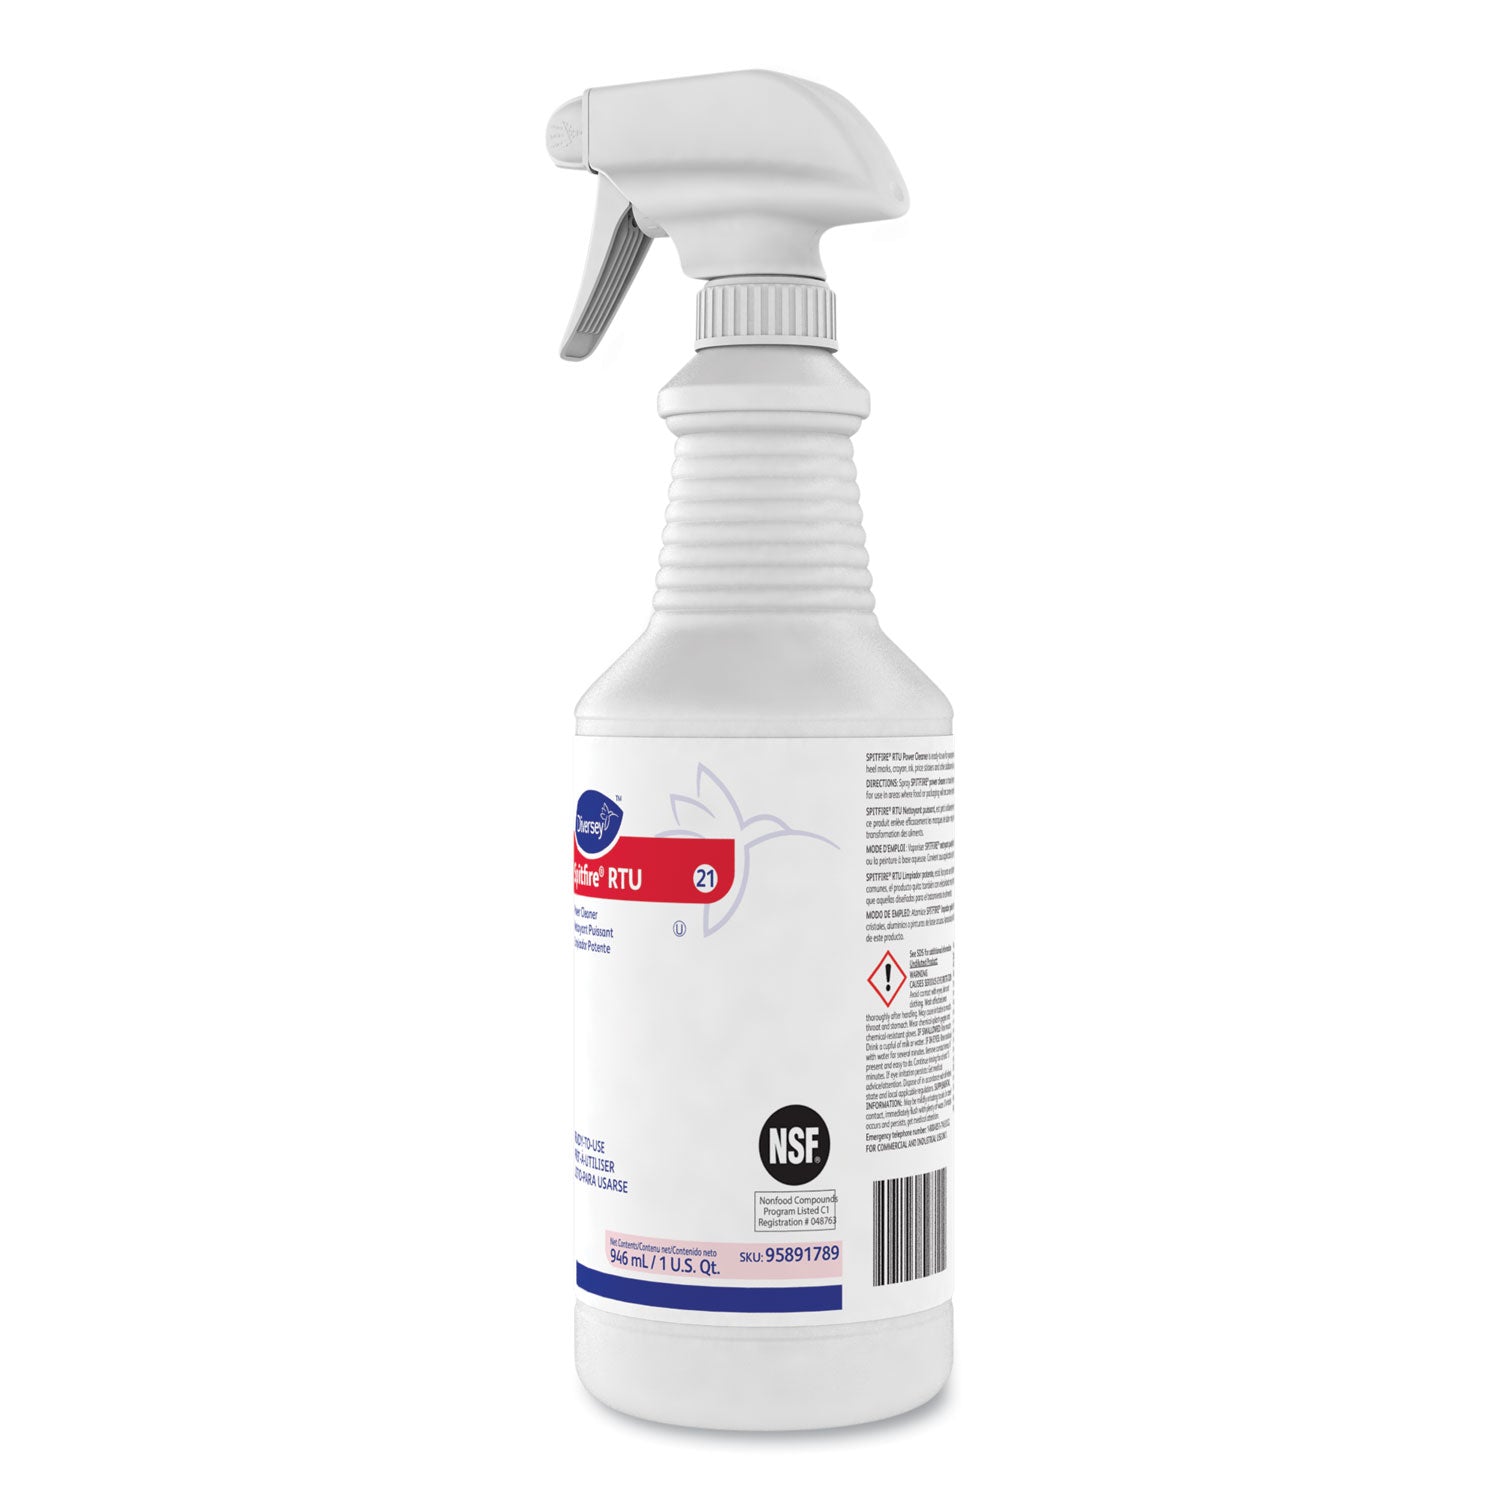 spitfire-power-cleaner-liquid-fresh-pine-scent-32-oz-spray-bottle-12-carton_dvo95891789 - 4